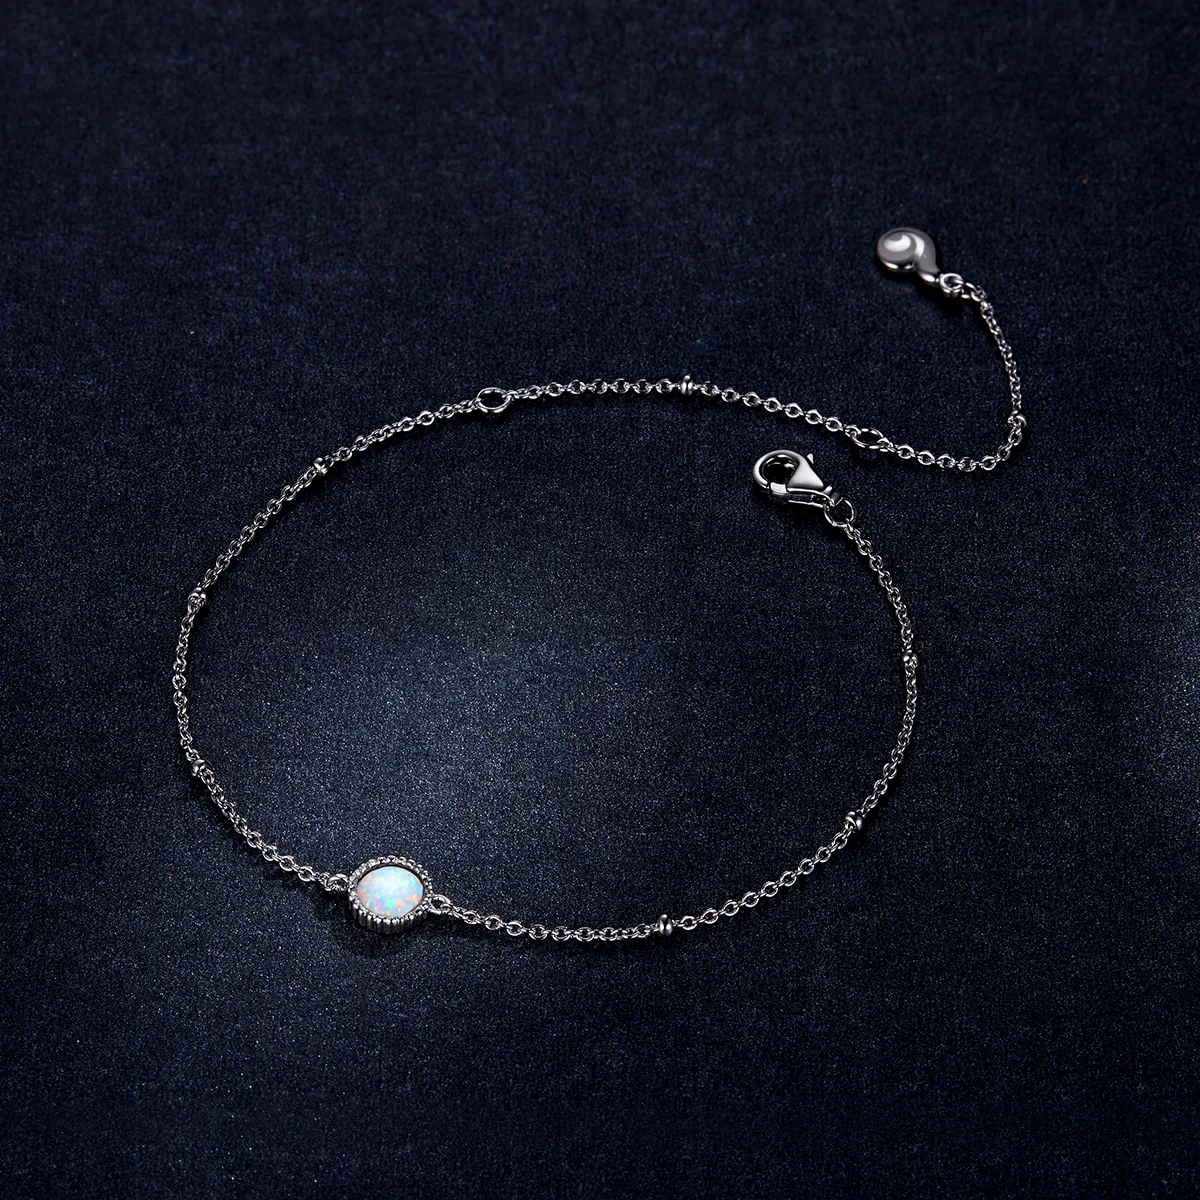 Brățară Tip Pandora cu Minunat Opal din argint - BSB054